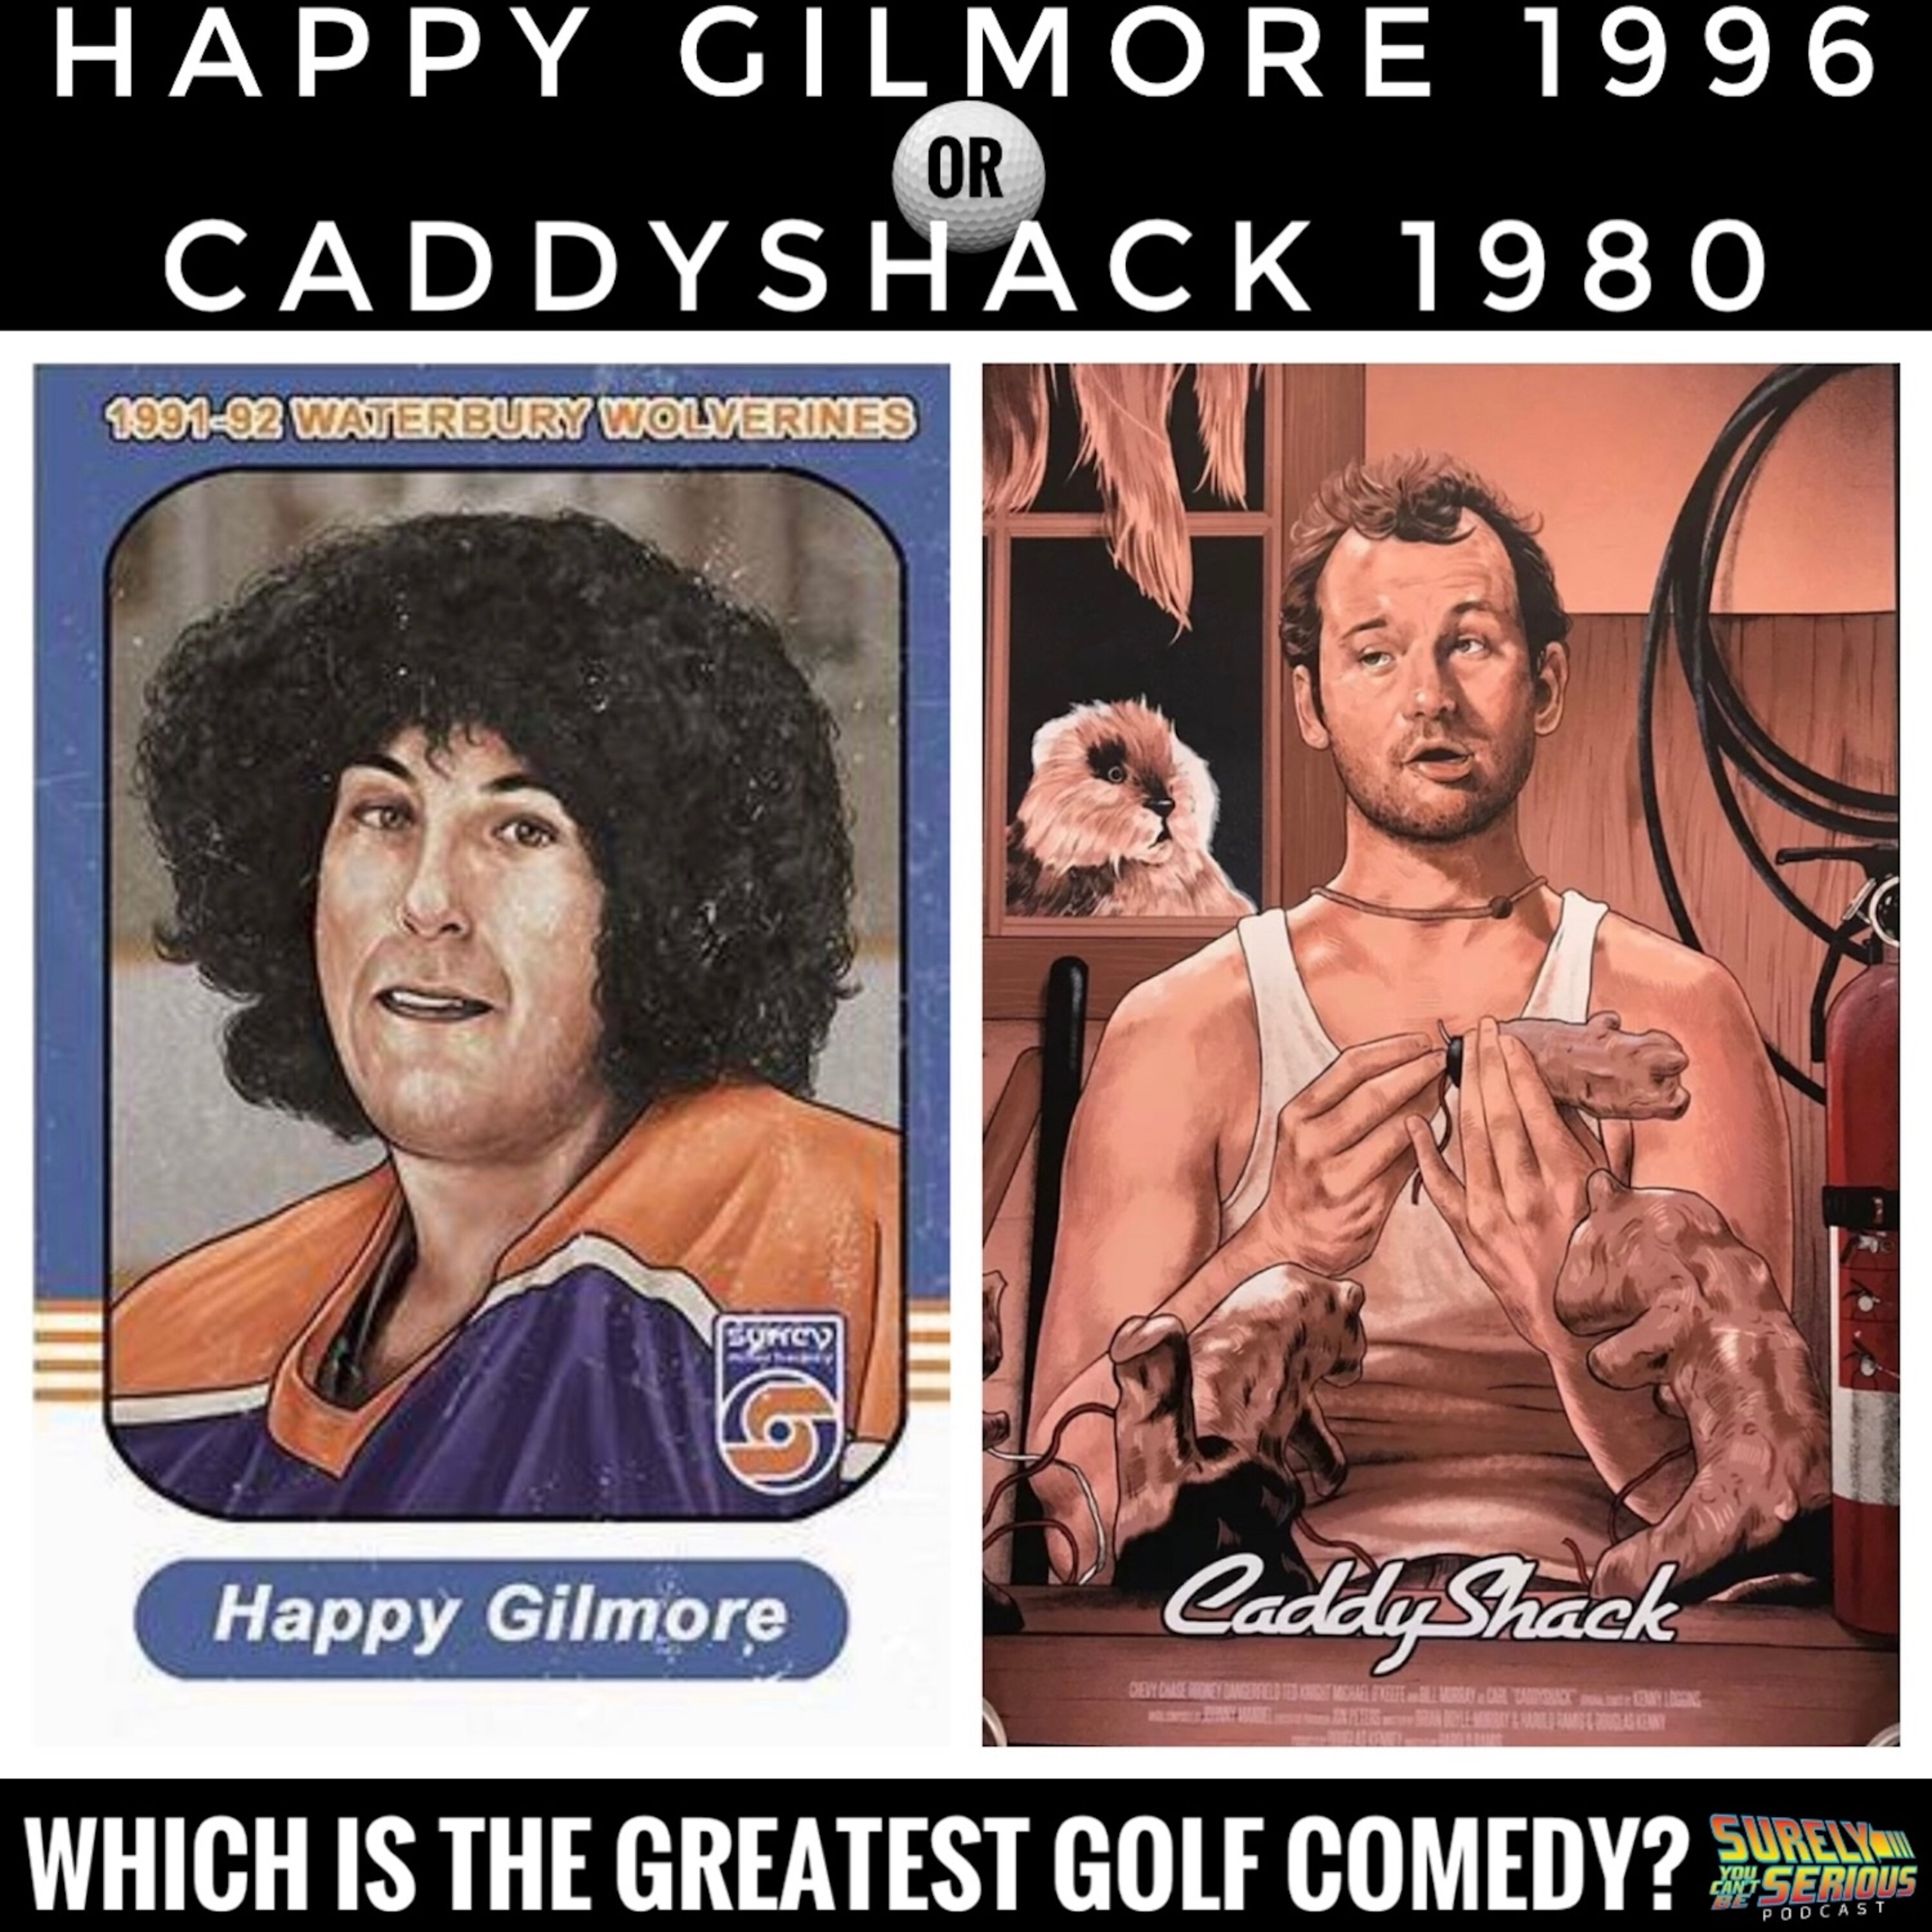 Happy Gilmore (1996) vs. Caddyshack (1980) Image